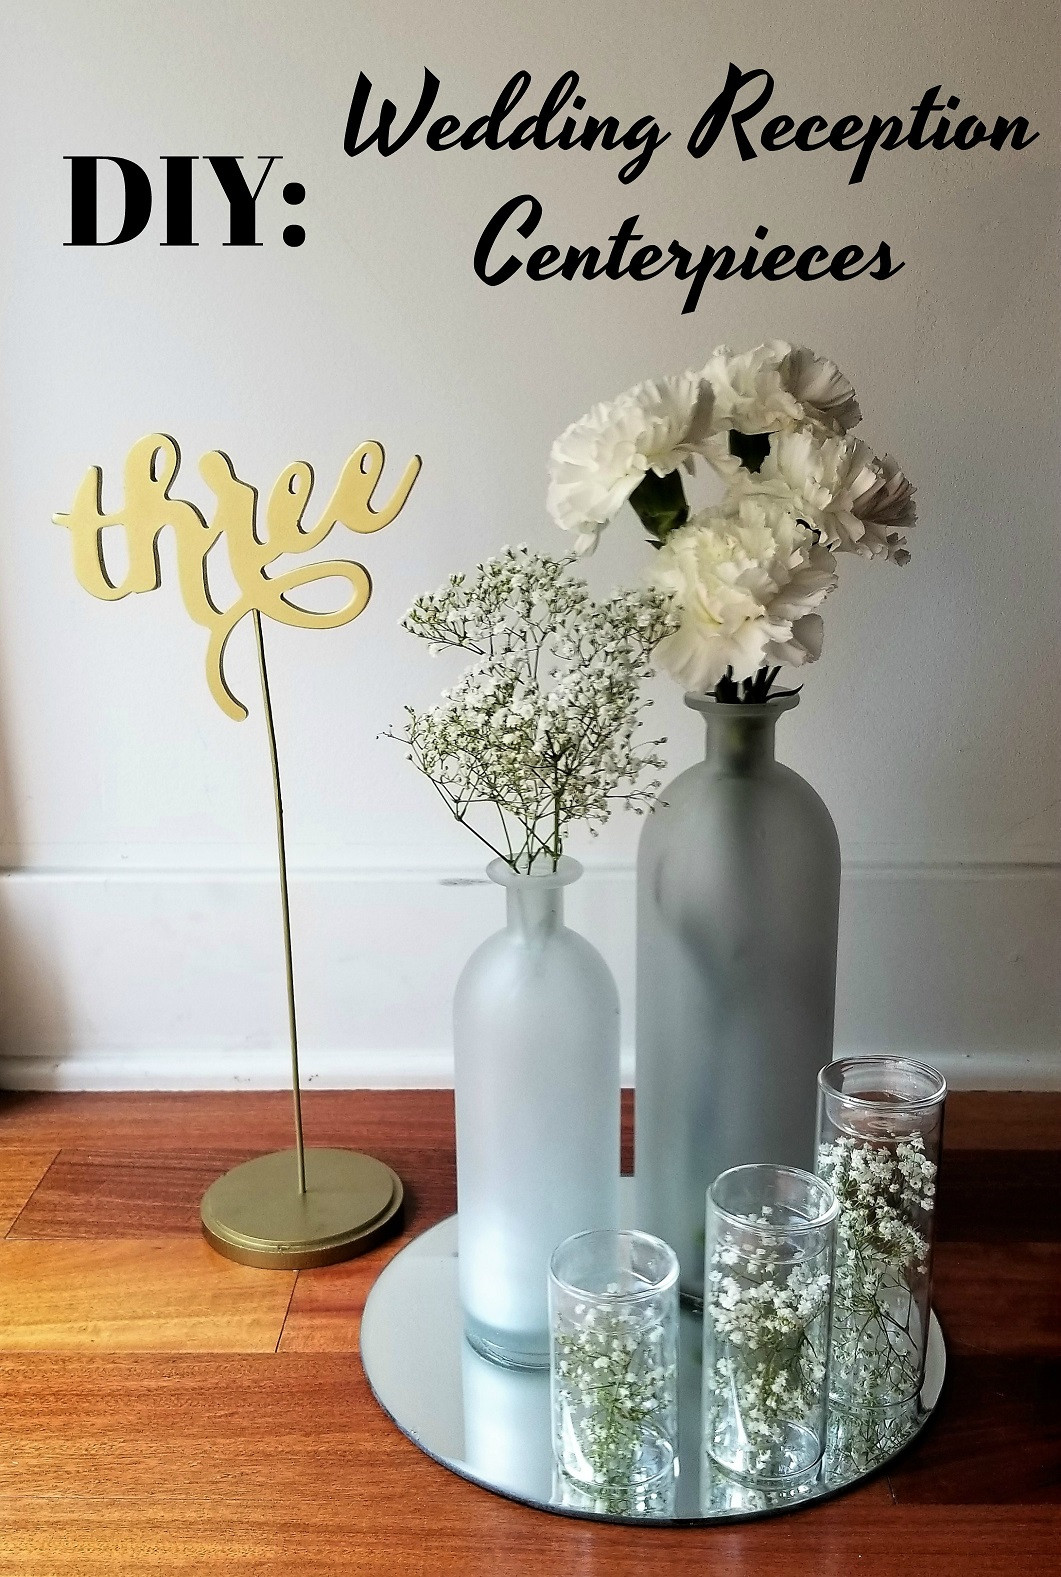 DIY Wedding Center Pieces
 DIY Inexpensive Wedding Reception Centerpieces La Vie en